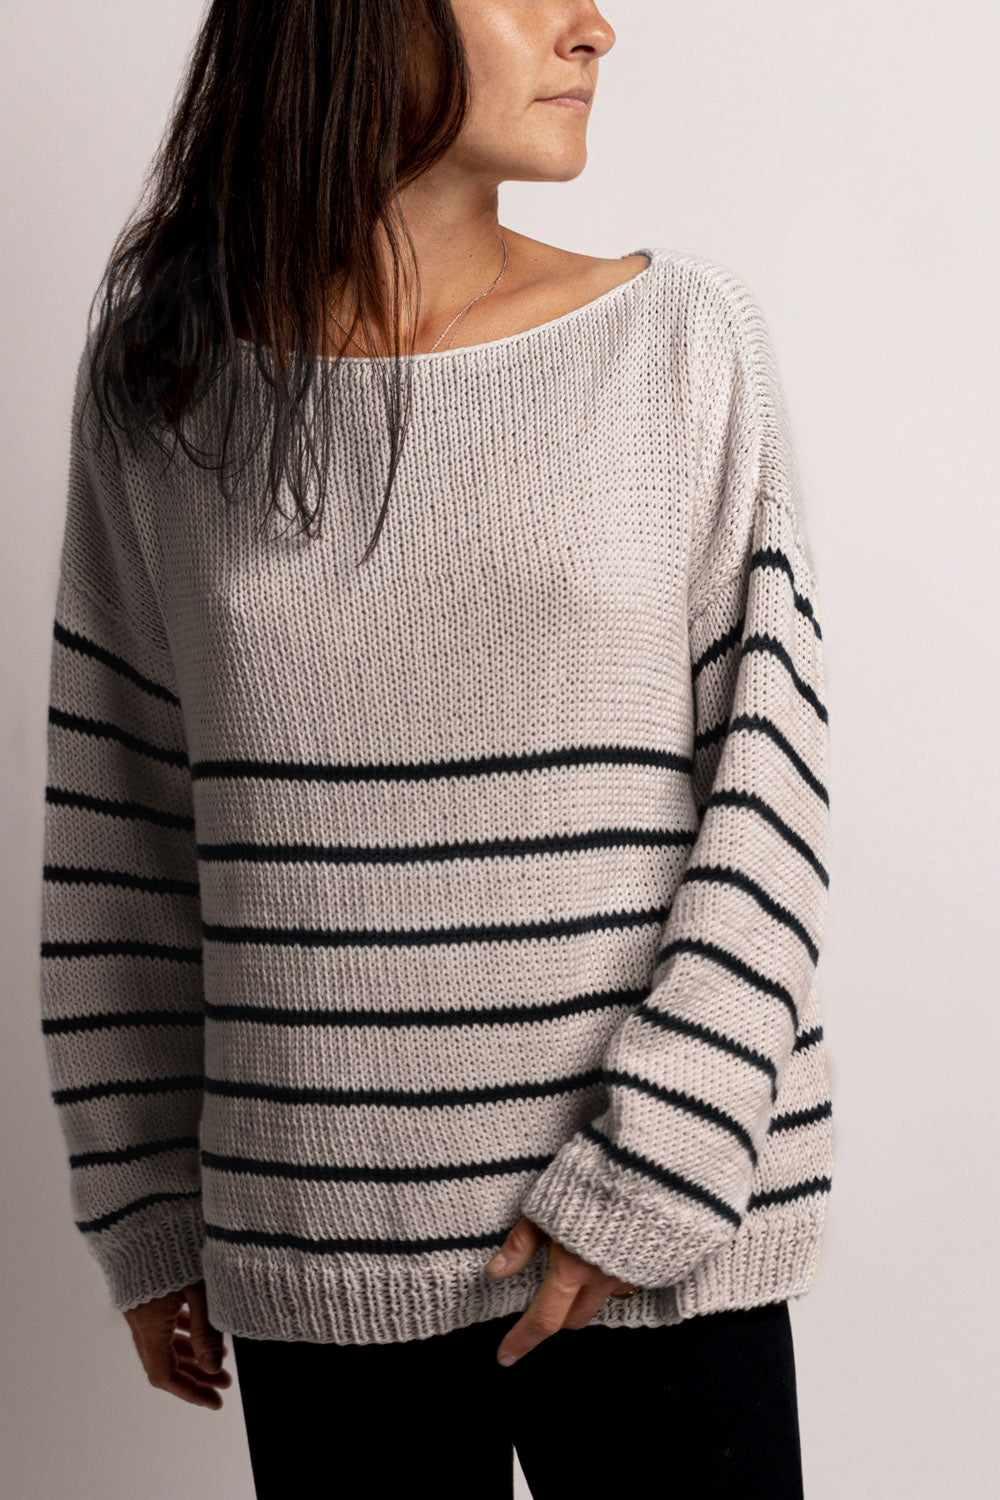 Abruzzo Sweater Pattern